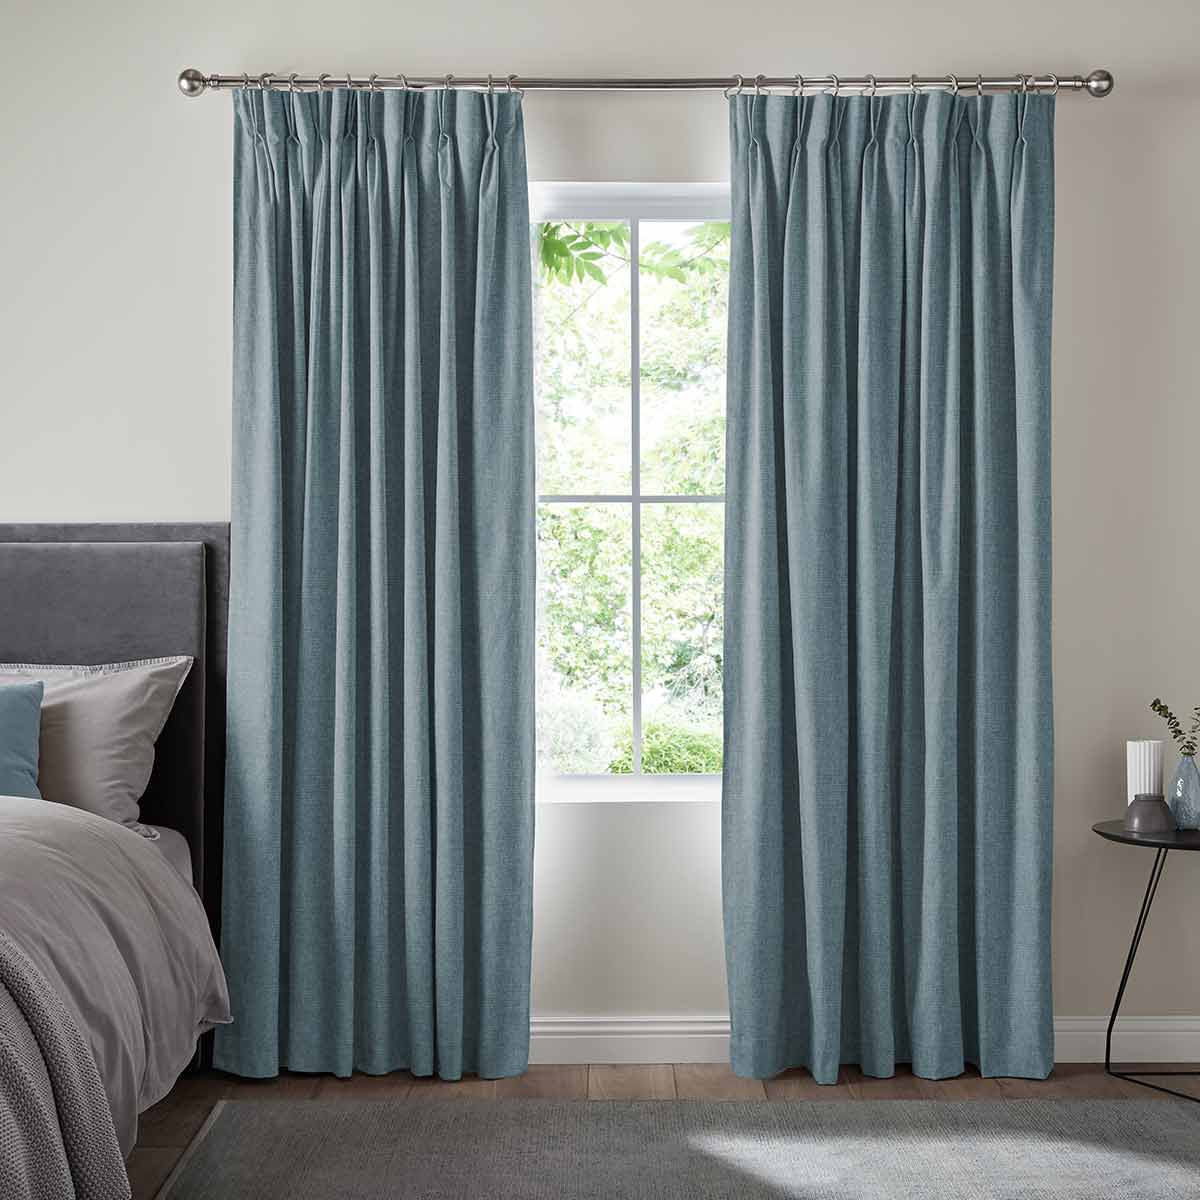 Jackson Teal Curtain - illumin8 Curtains and Blinds